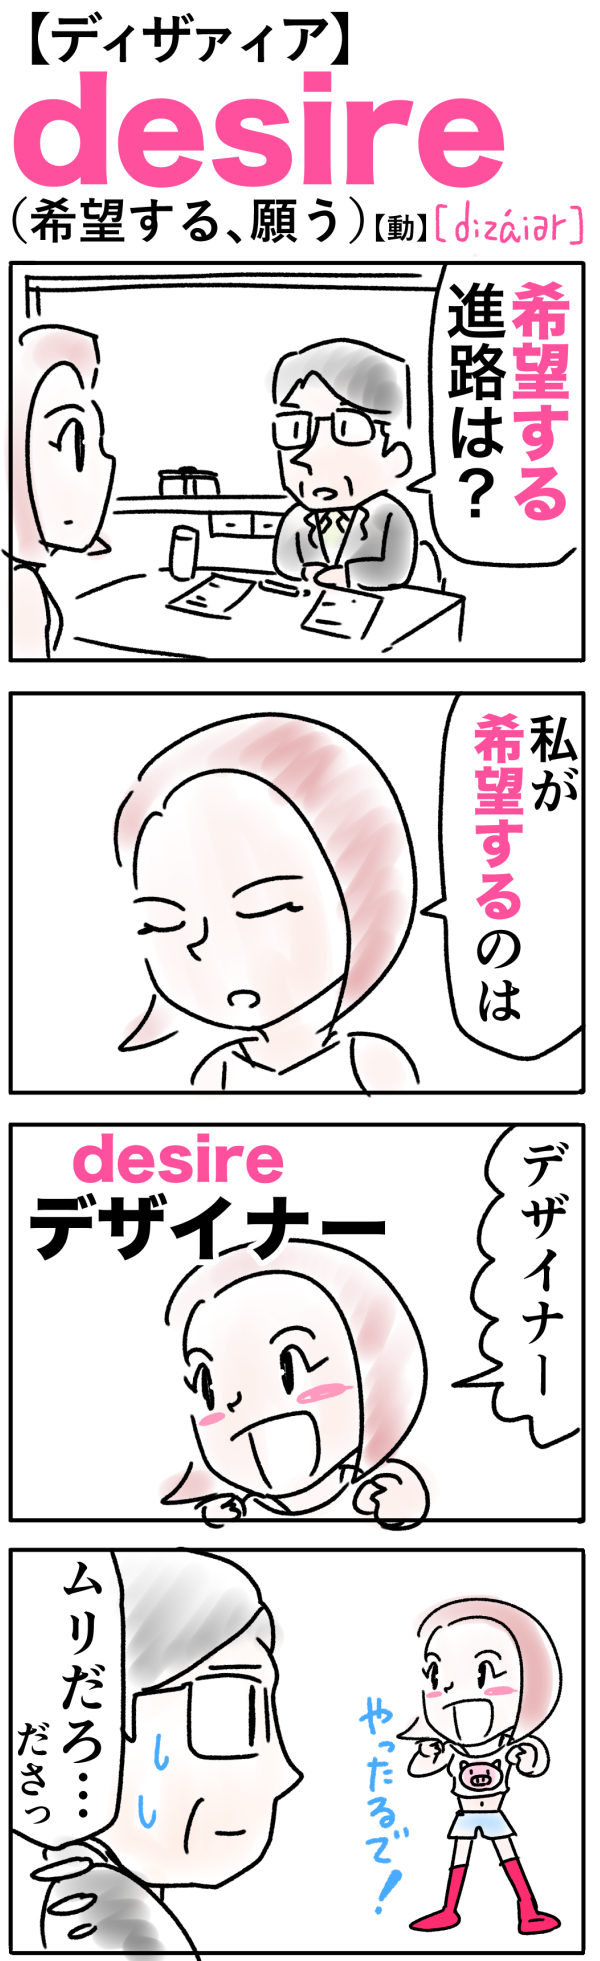 desire（希望する）の語呂合わせ英単語